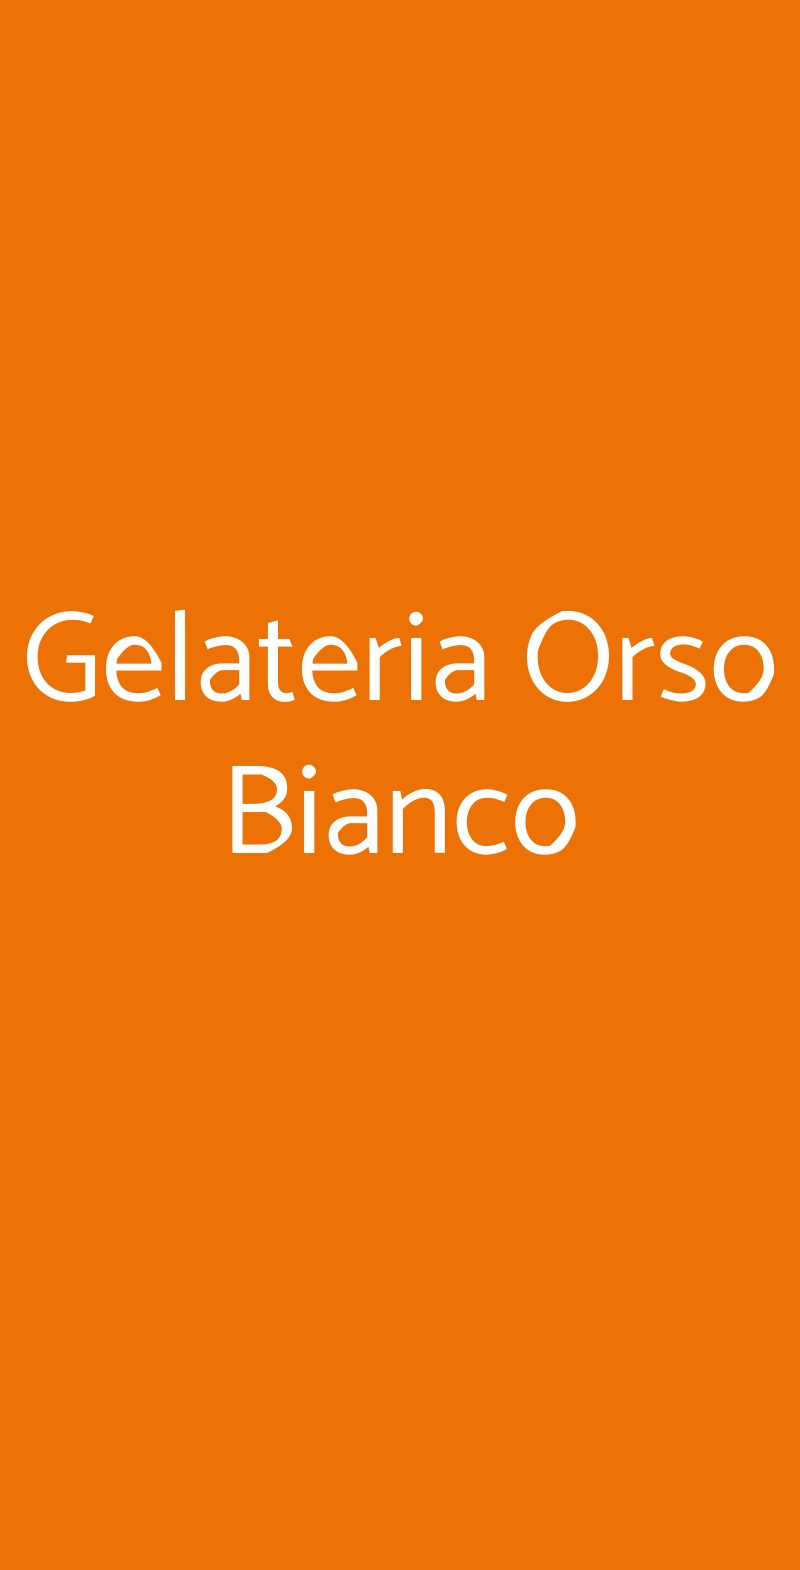 Gelateria Orso Bianco Milano menù 1 pagina